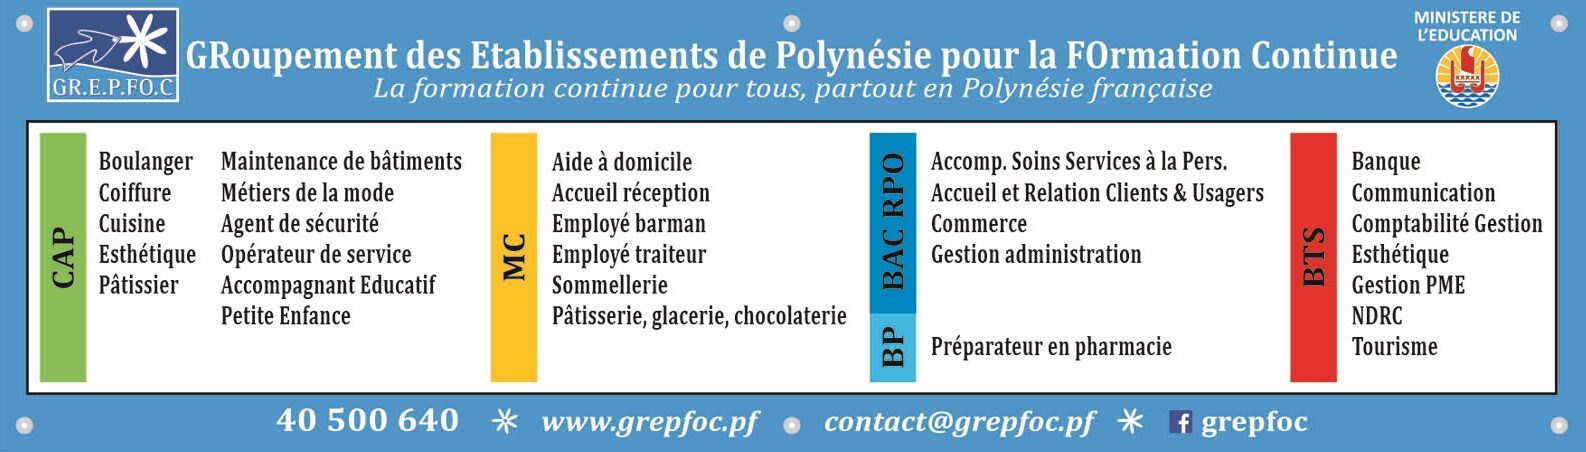 GRoupement des Etablissements de Polynésie pour la FOrmation Continue | GR.E.P.FO.C